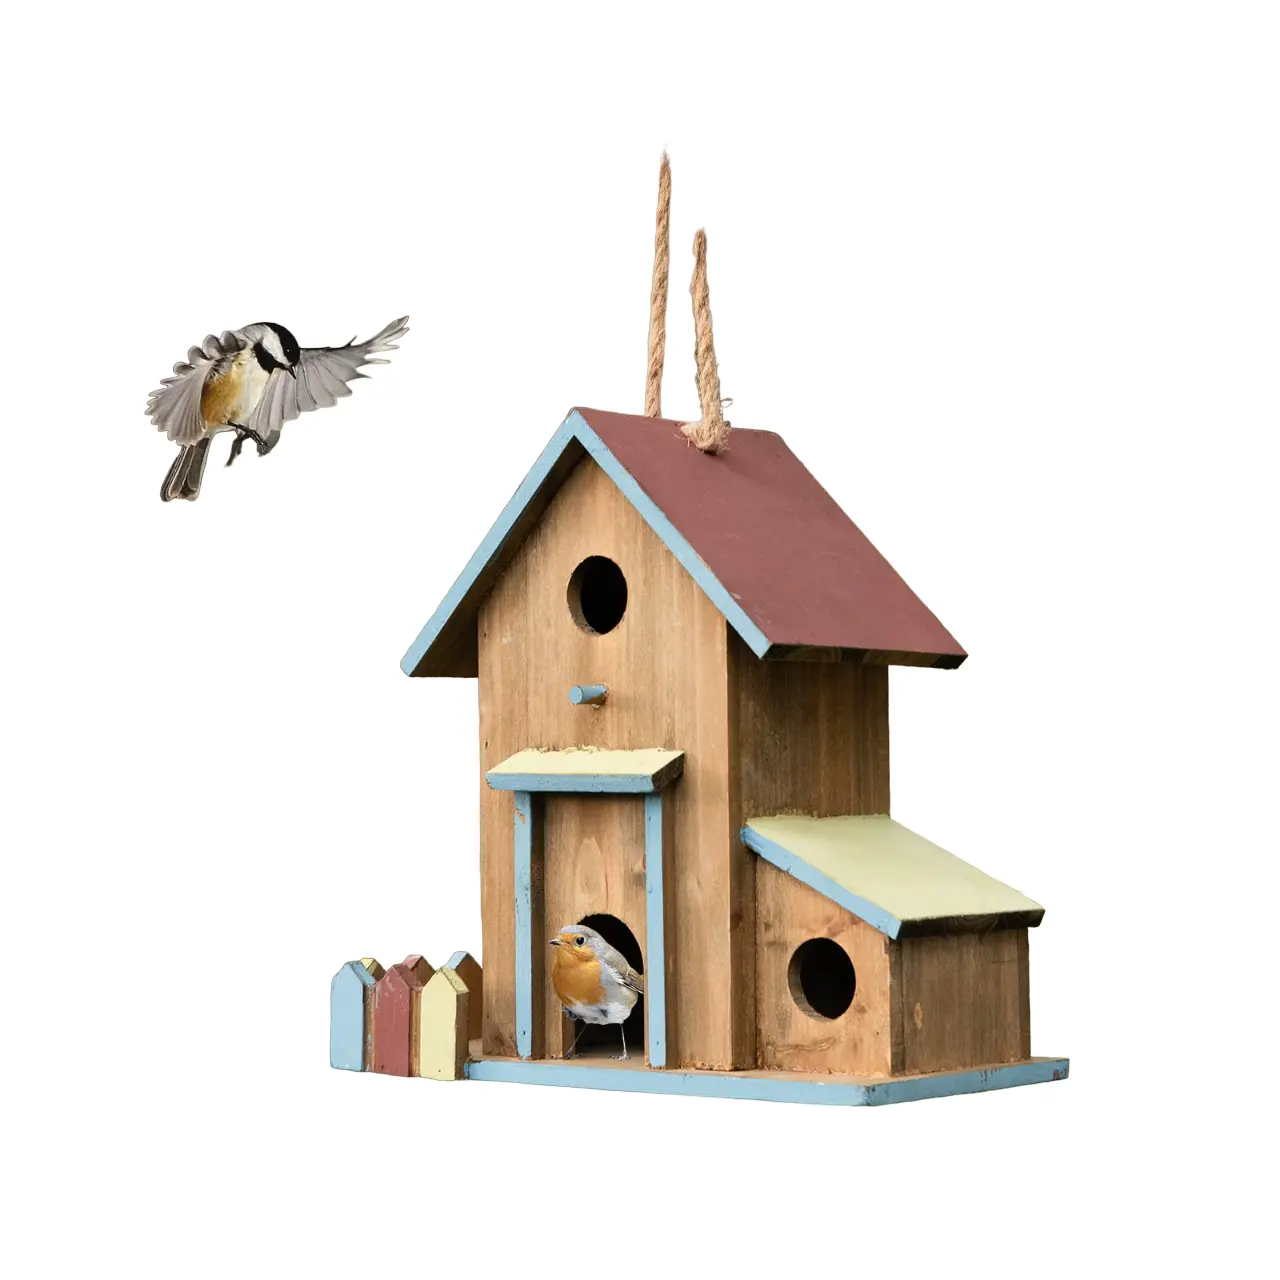 Amazon Hot Selling Holz vogelhaus für draußen in langlebiger Qualität mit elegantem Finish Holz vogel häuschen für Vögel